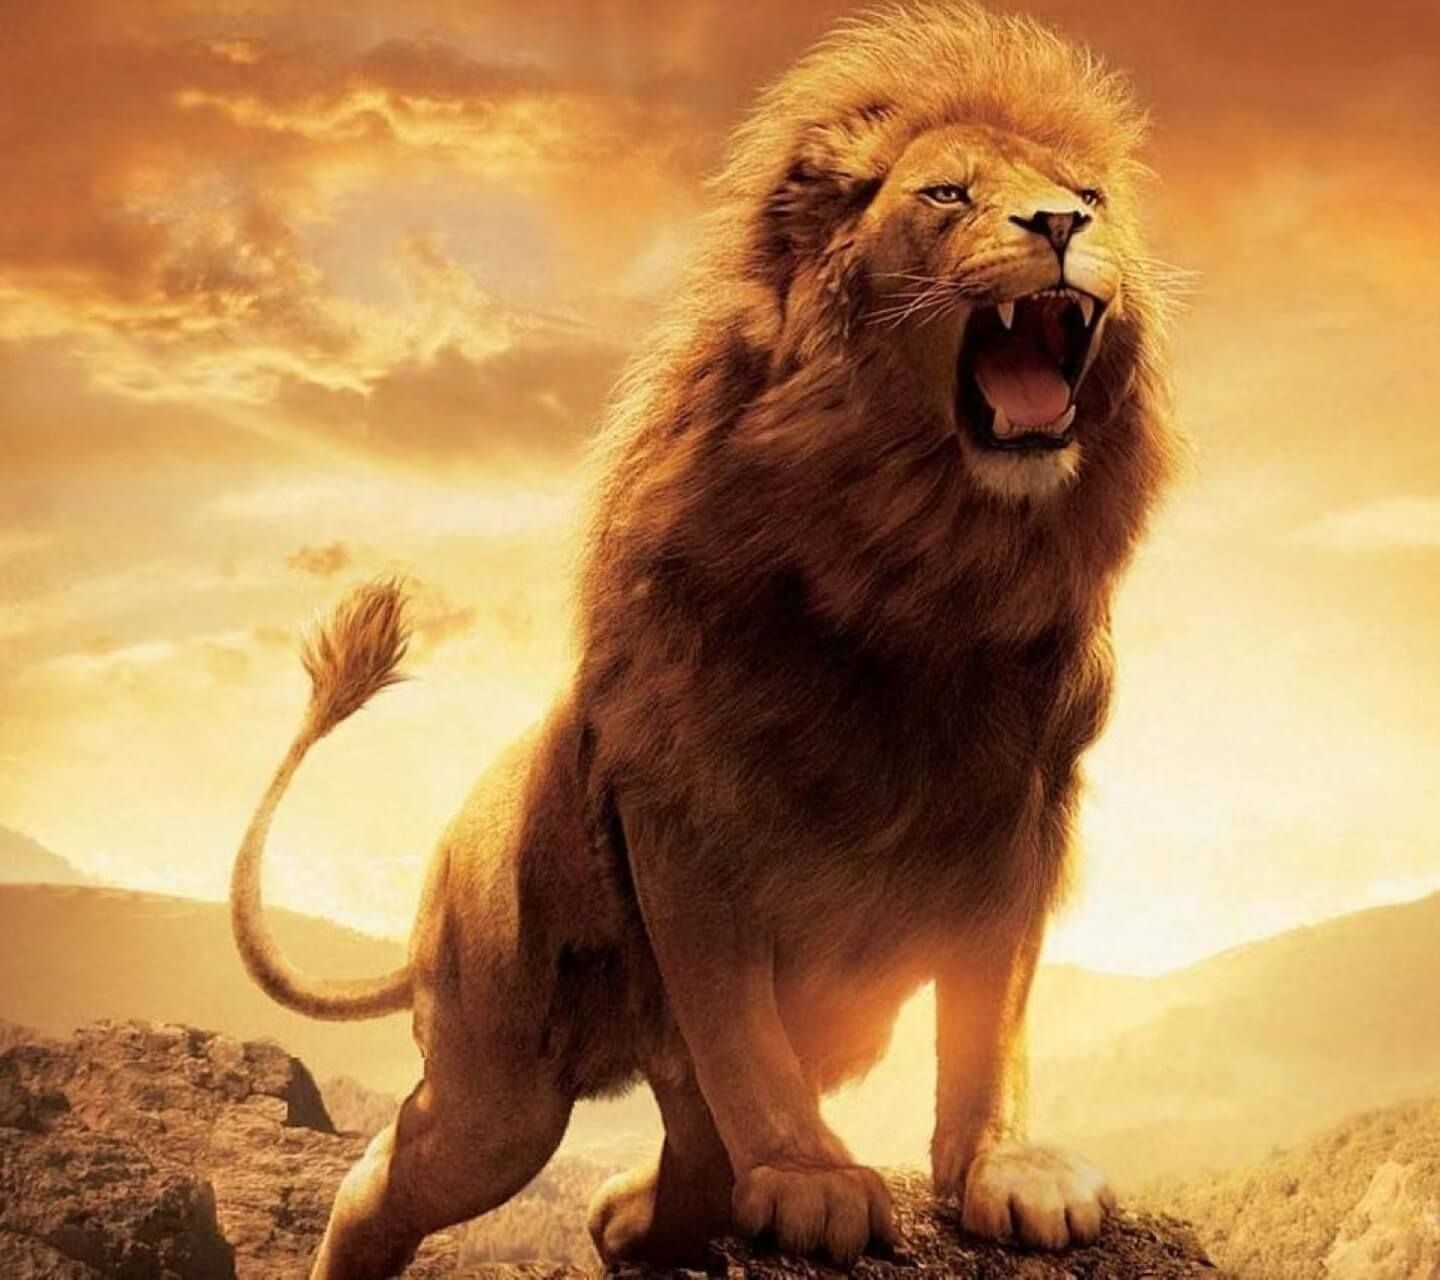 Roaring Lion Wallpaper Hd 1080p Lion Images Hd Download